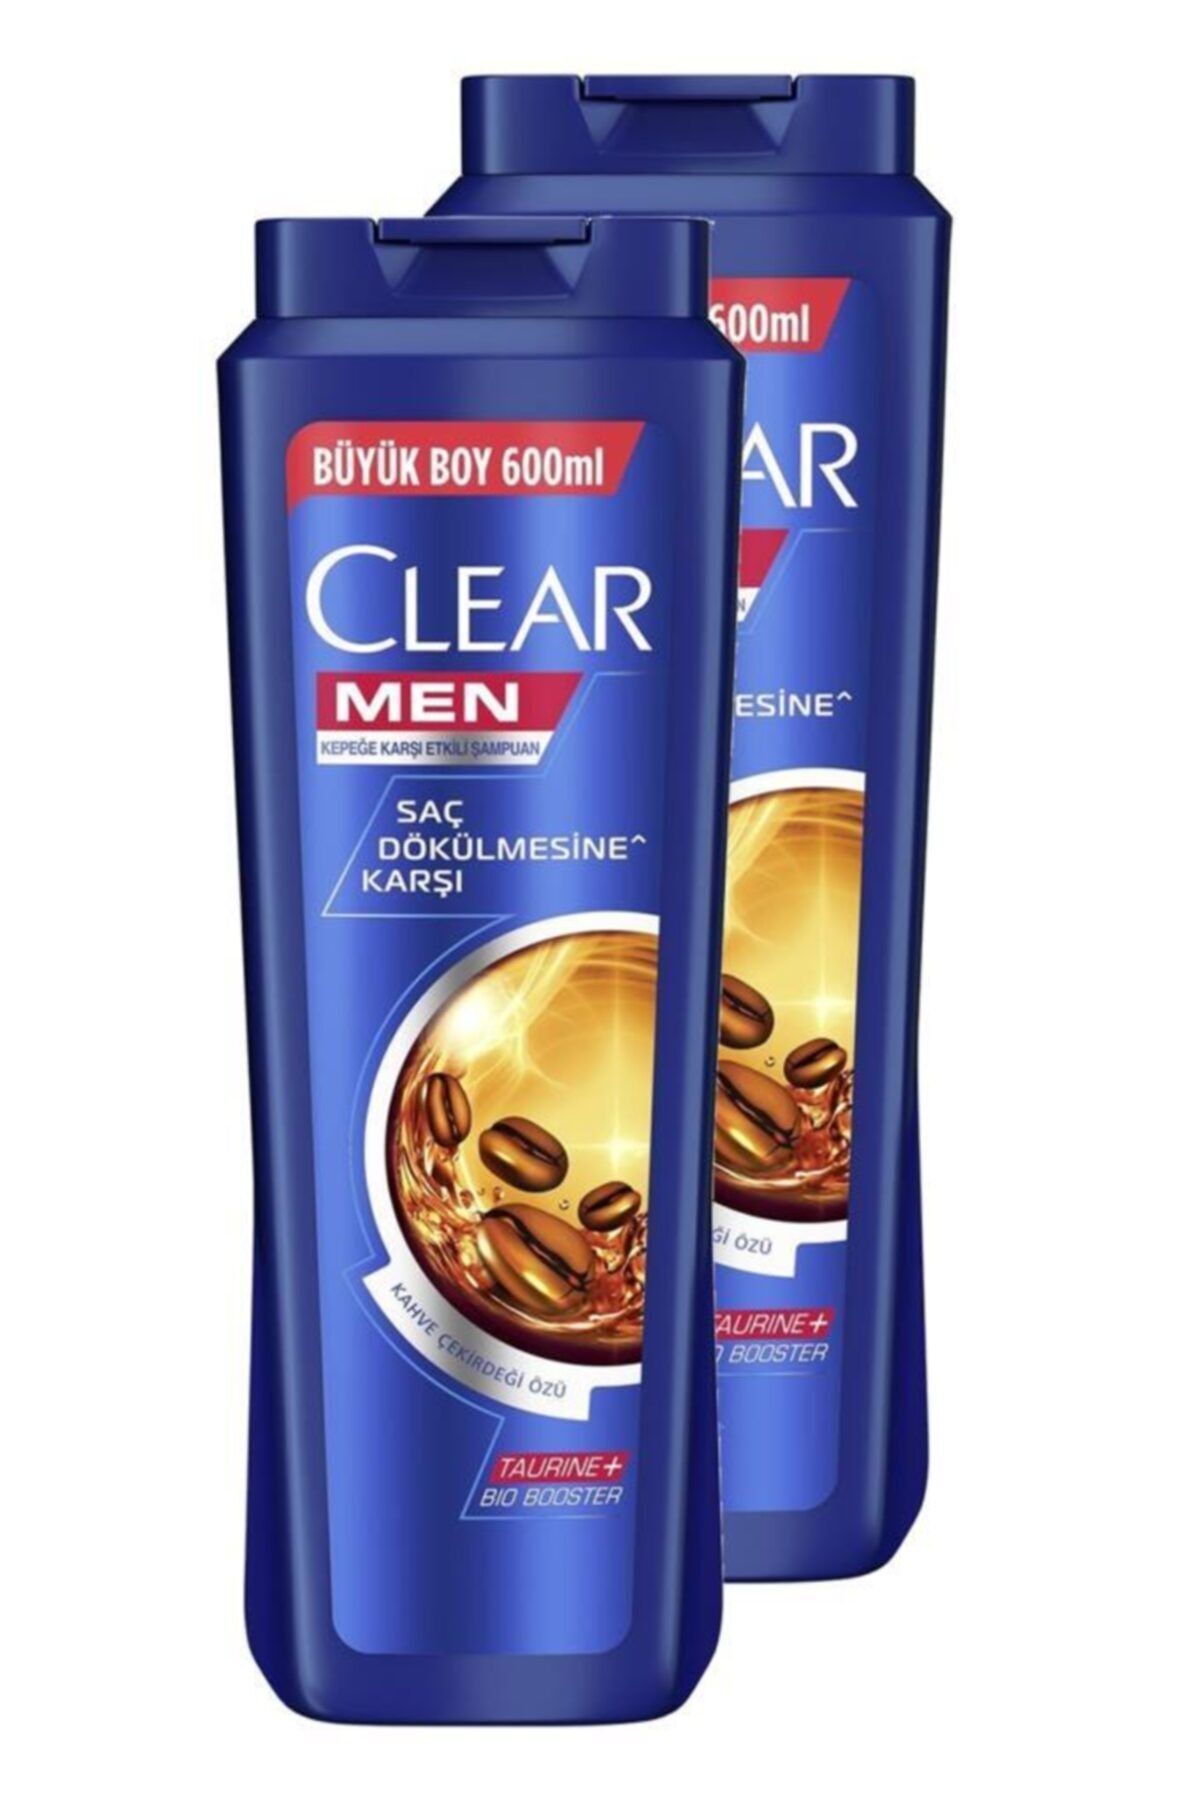 Clear Saç Dökülmesine Karşı Şampuan Kullananlar